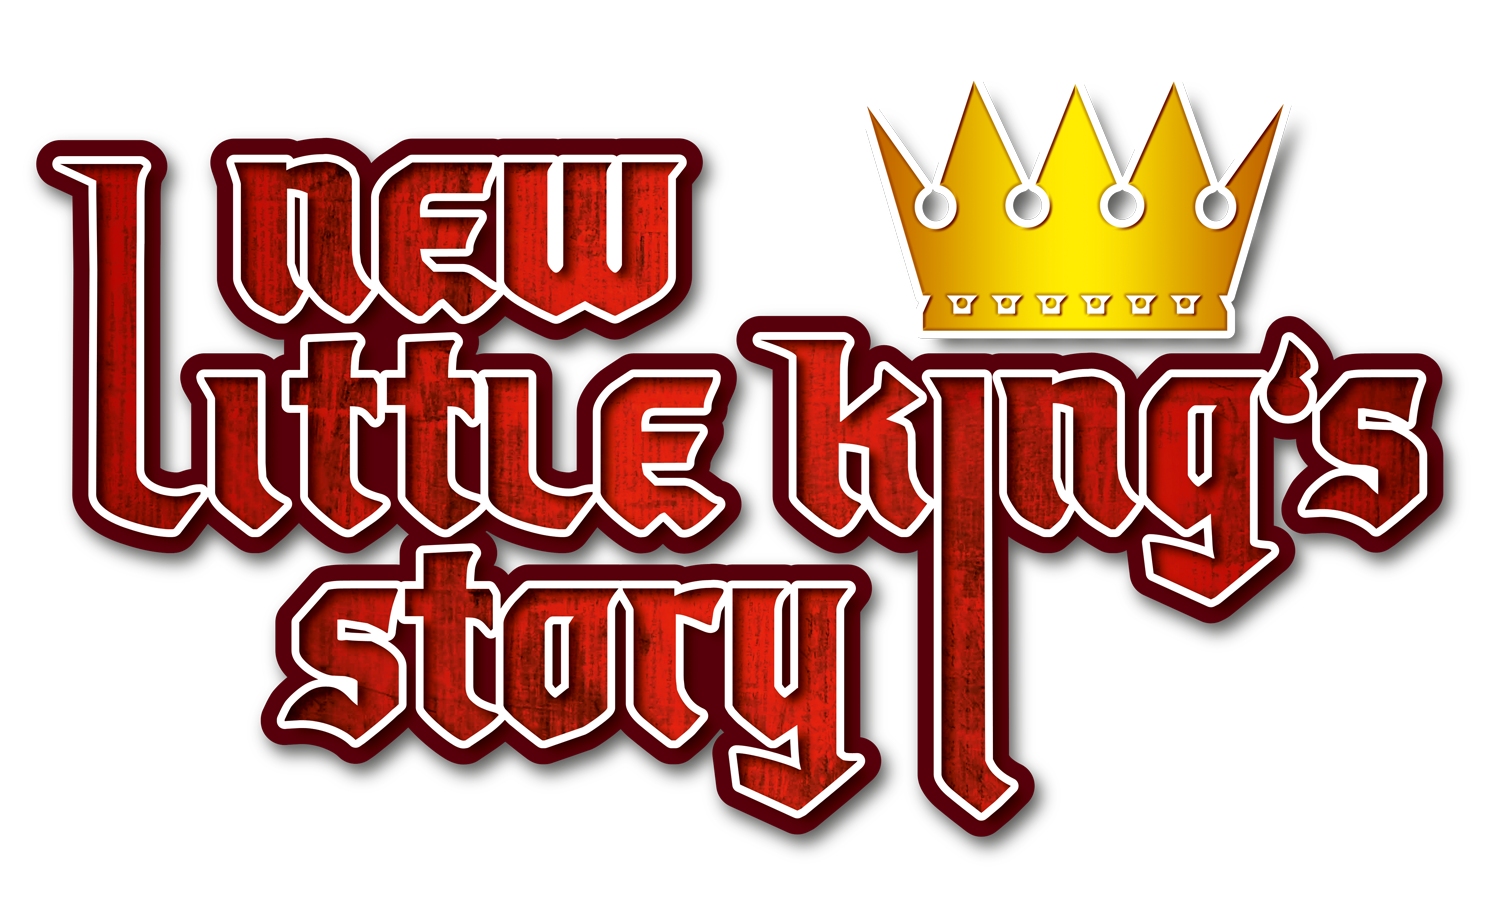 Little King лого. King story. New little King's story. Little Kings 2. Литл рпг